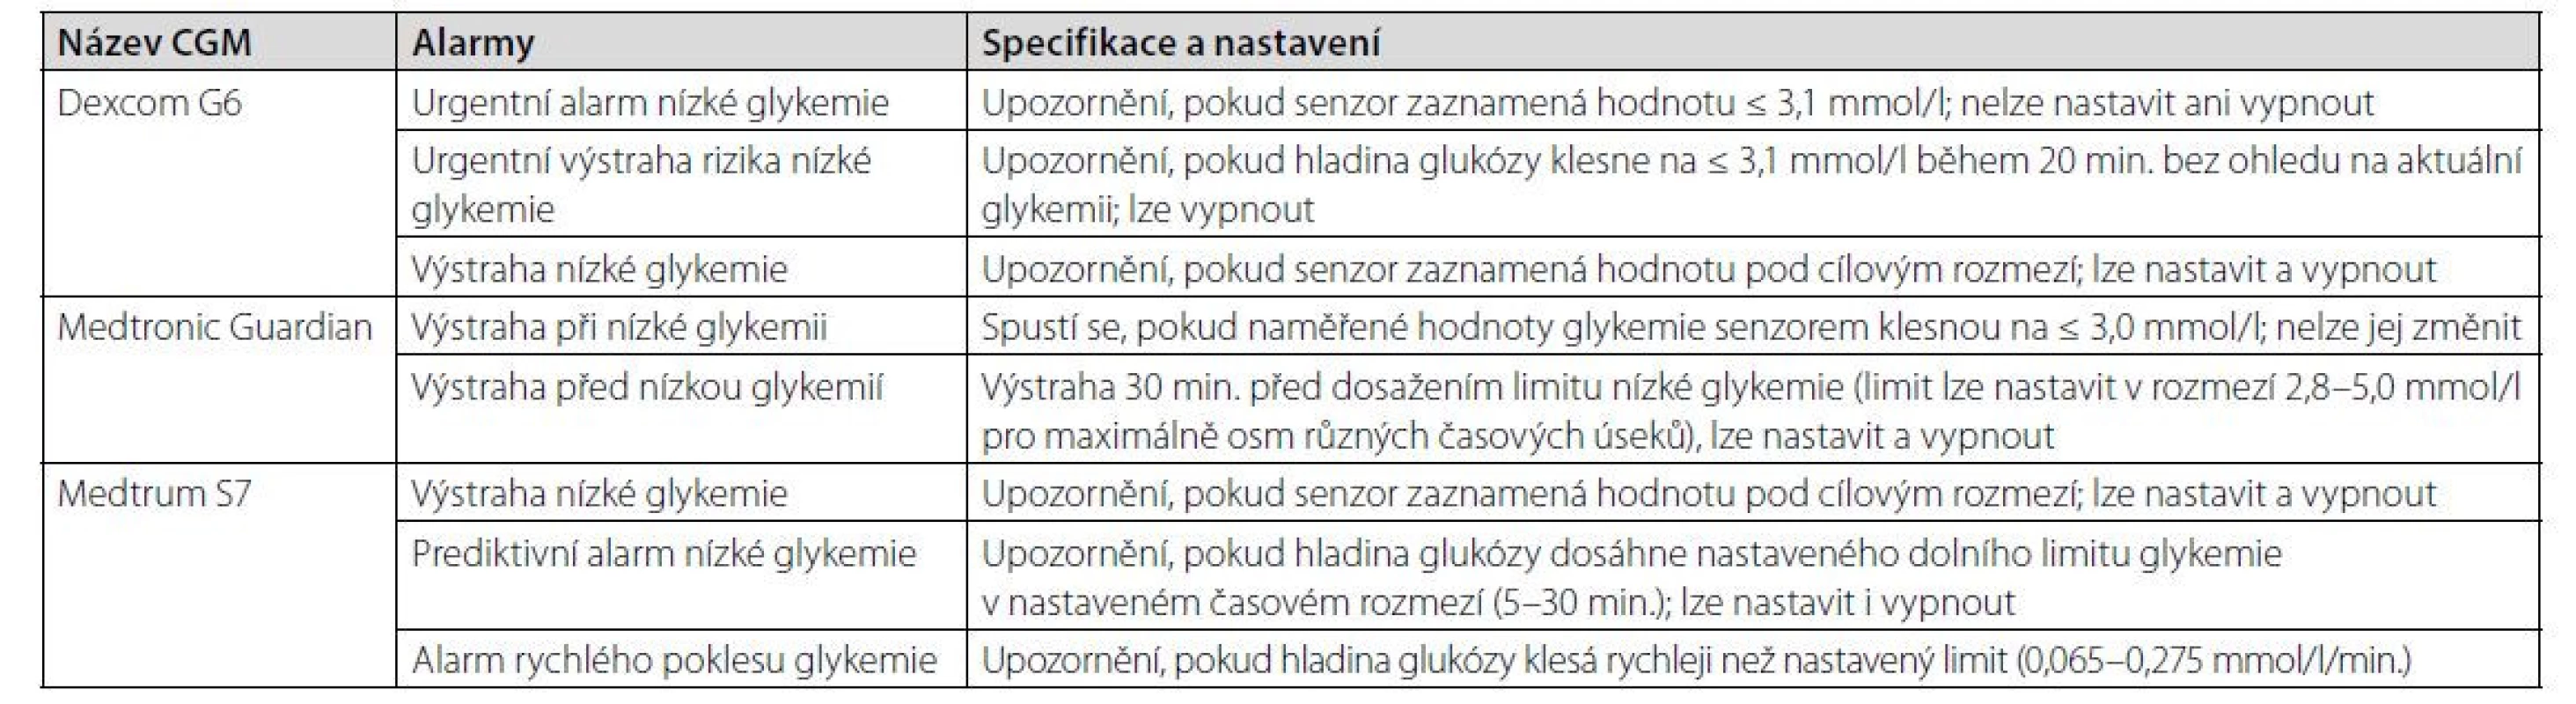 Přehled hypoglykemických alarmů u nejpoužívanějších systémů CGM v České republice (dle 10, 11, 12, 13)